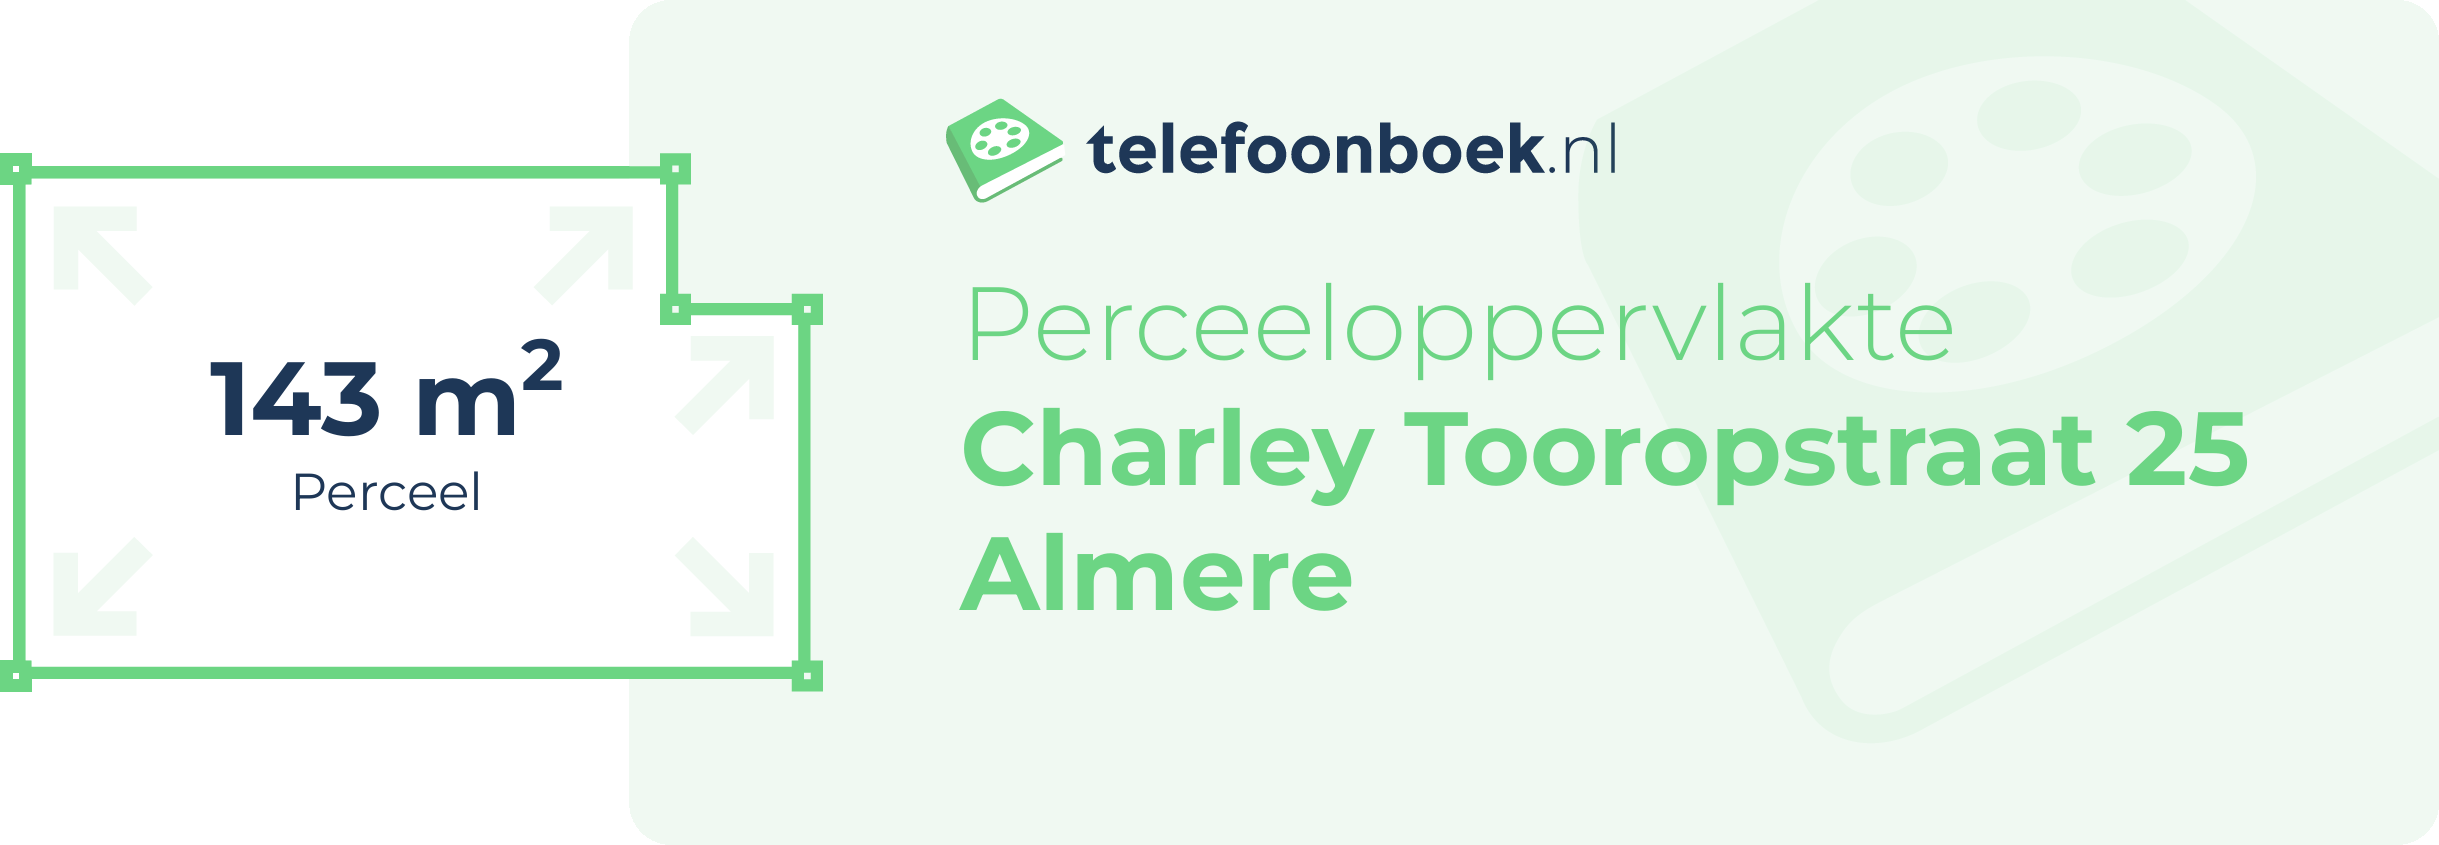 Perceeloppervlakte Charley Tooropstraat 25 Almere